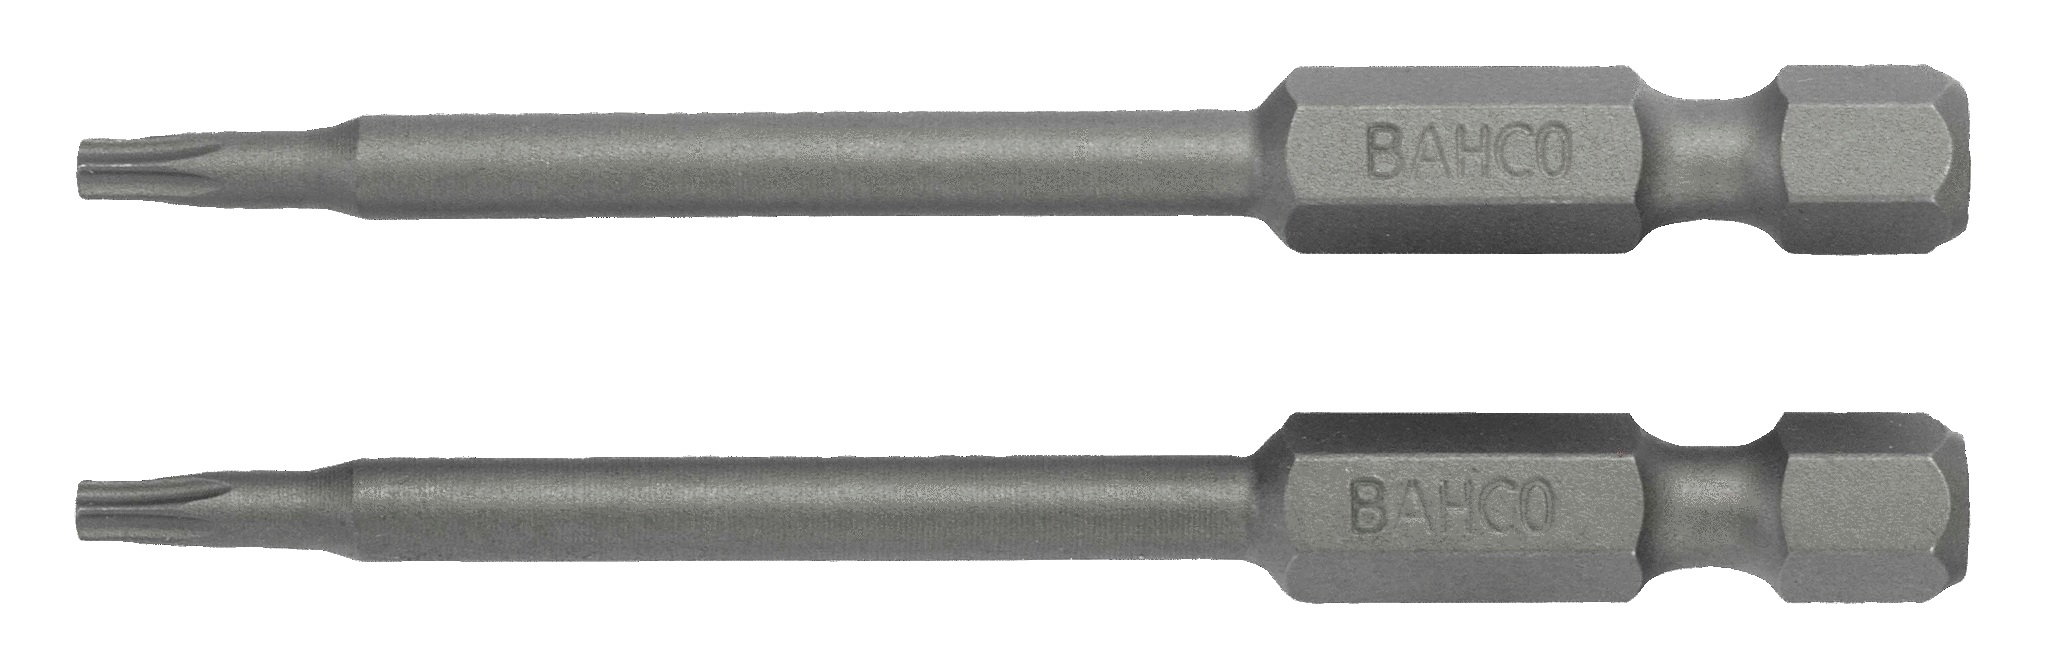 картинка Стандартные биты для отверток Torx®, 70 мм BAHCO 59S/70T30-2P от магазина "Элит-инструмент"